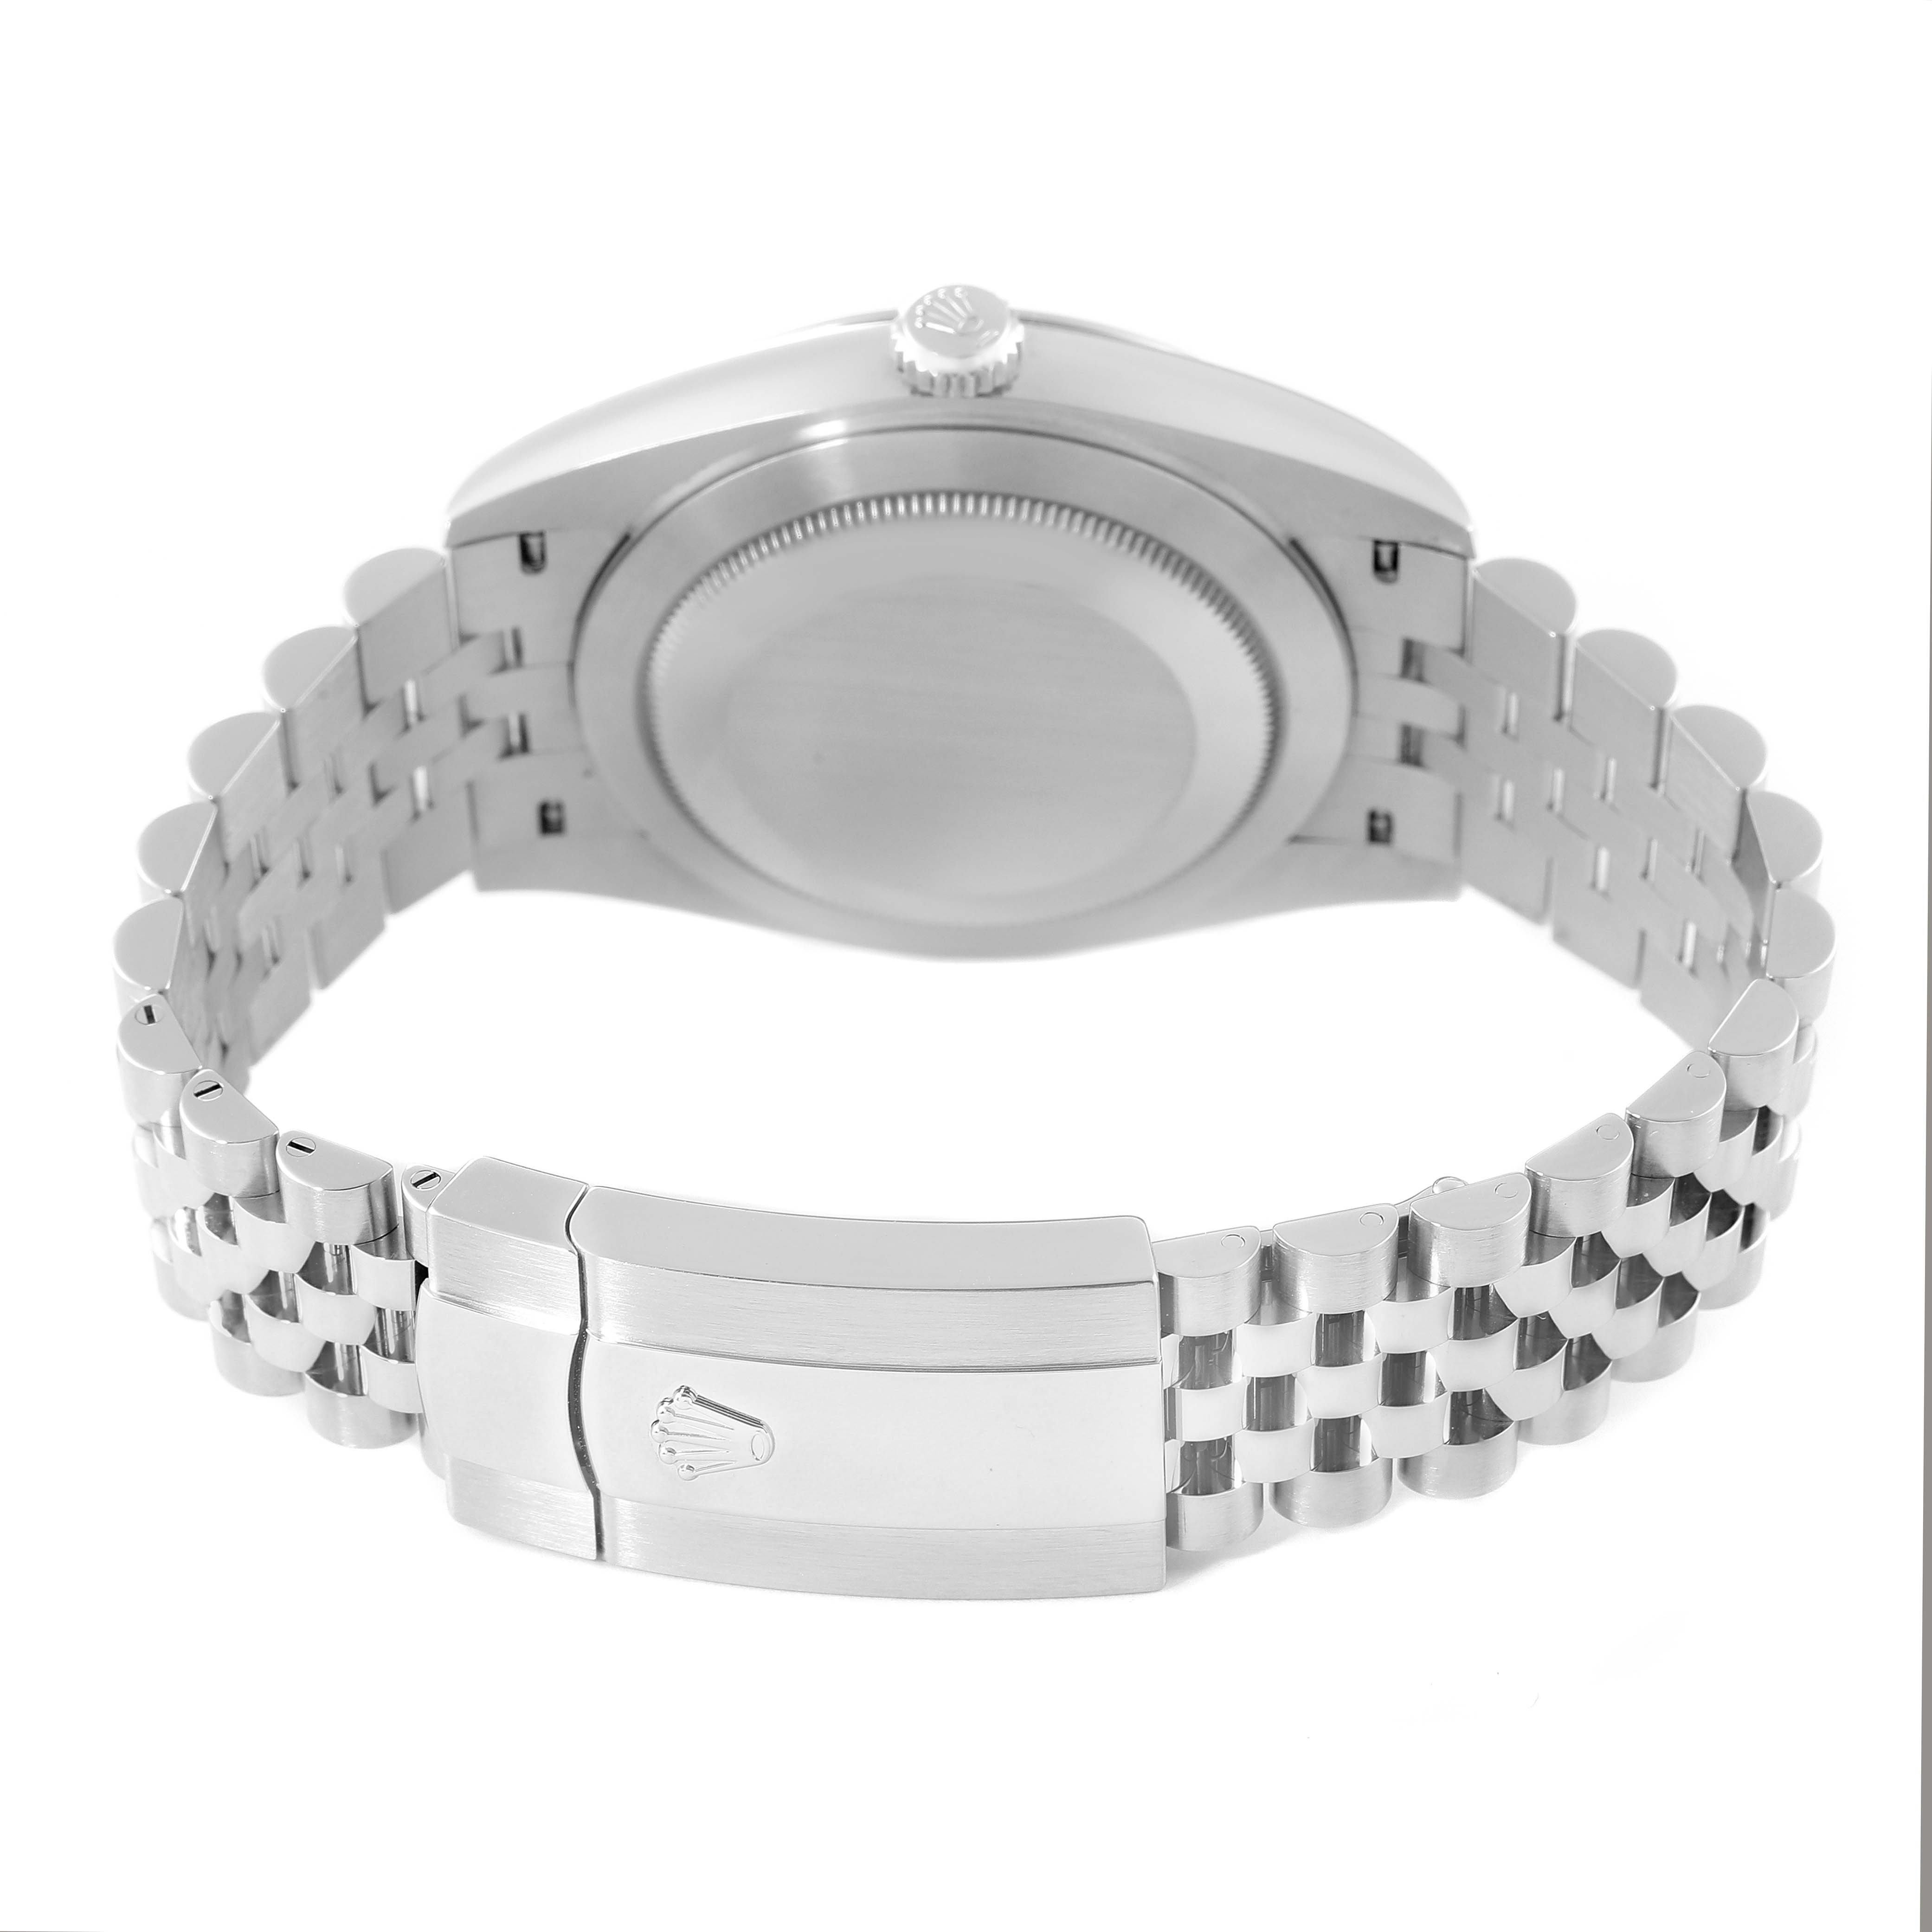 Rolex Datejust 41 Black Dial Steel Jubilee Bracelet Watch 126300 Box ...